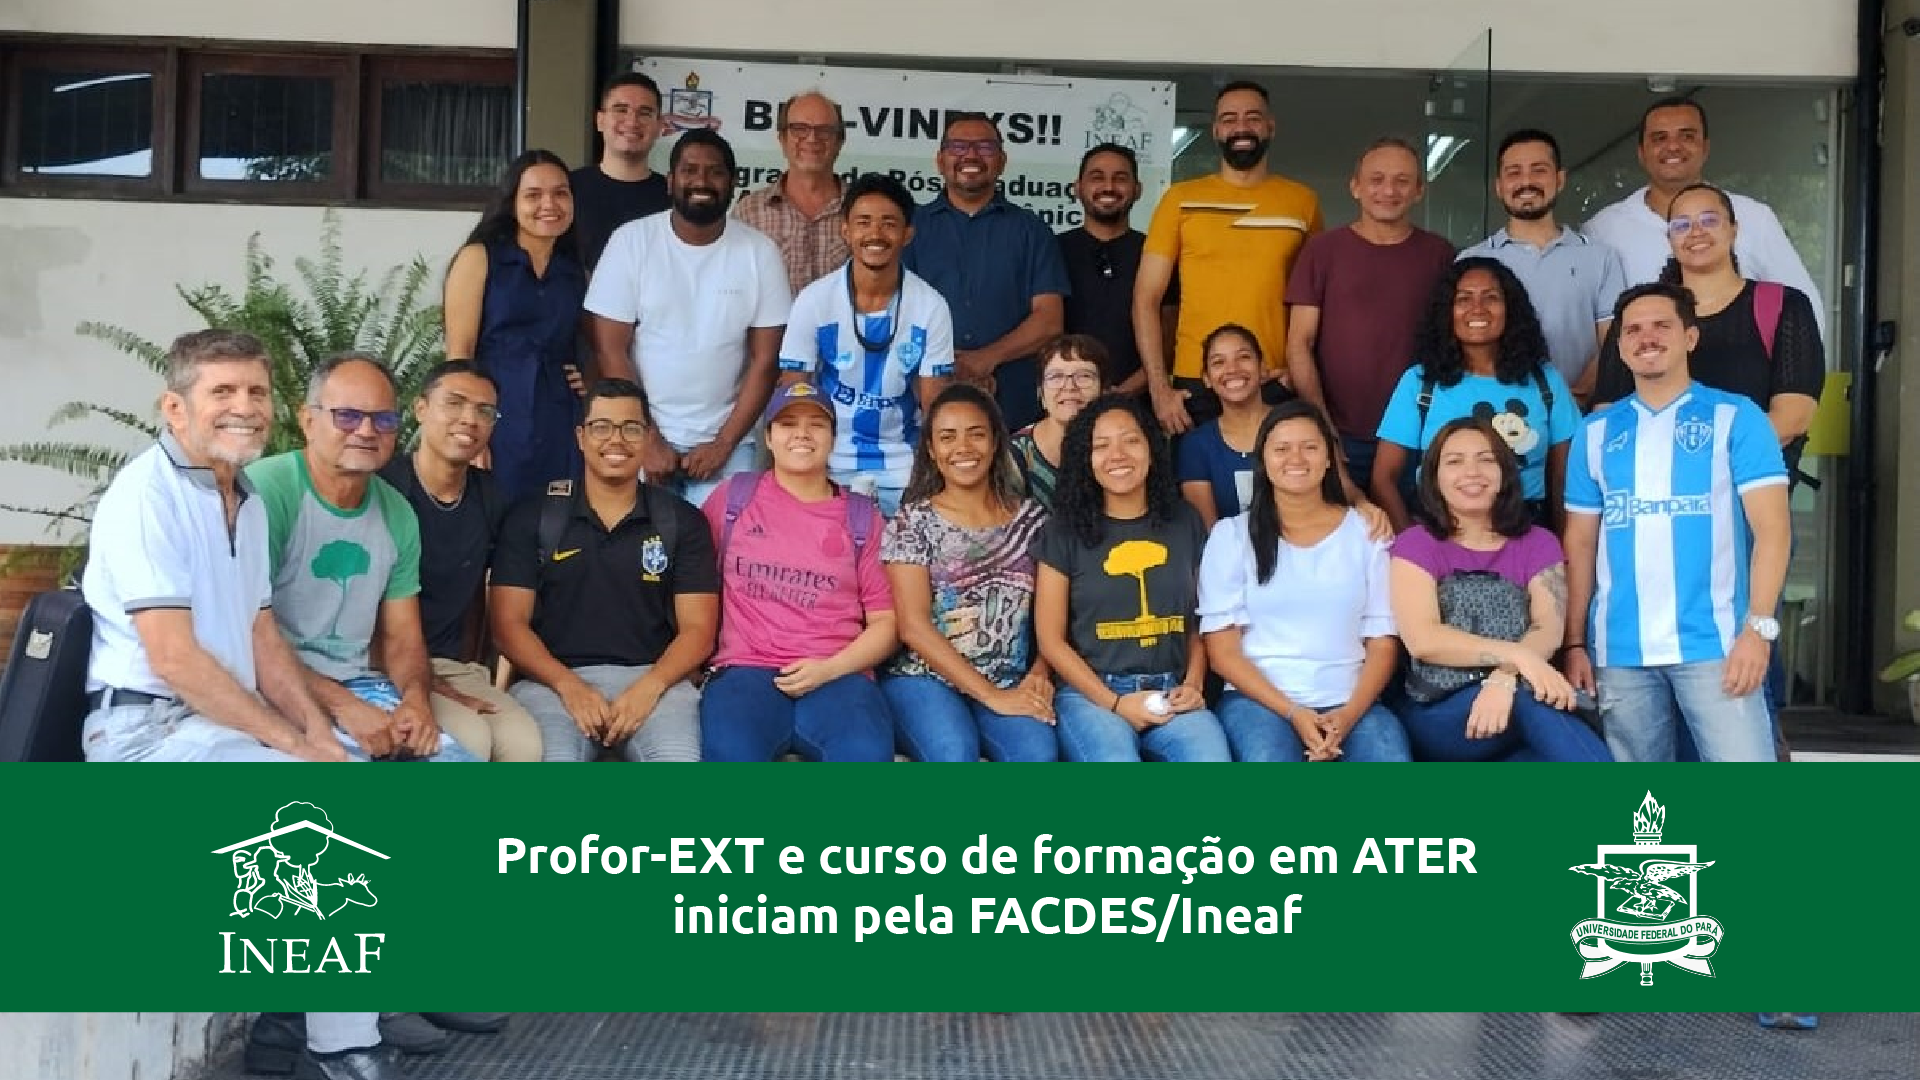 Profor-EXT e Curso de formação em ATER iniciam pela FACDES/Ineaf